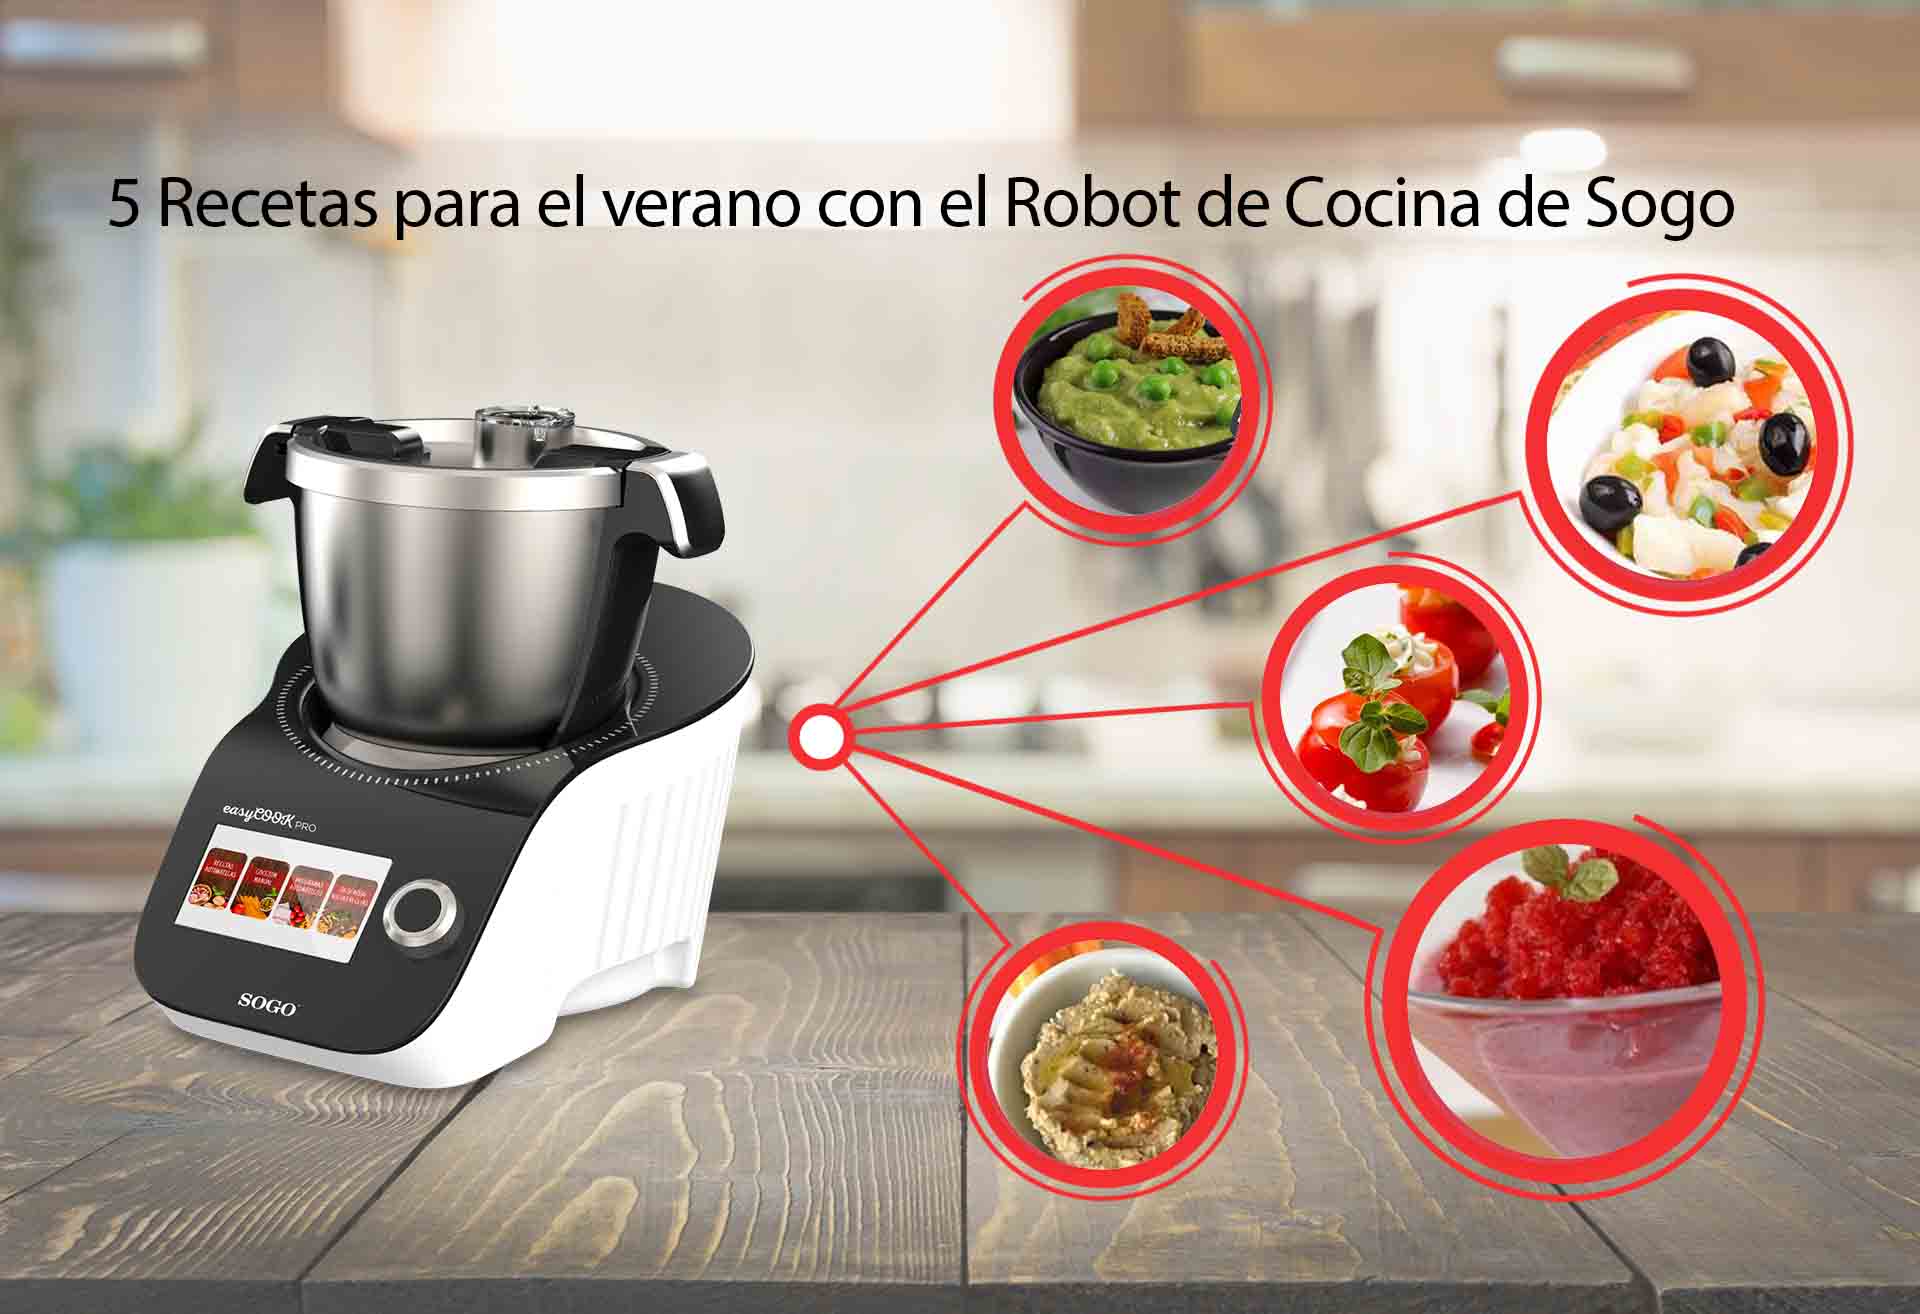 5 Recetas para el verano con el Robot de Cocina de Sogo